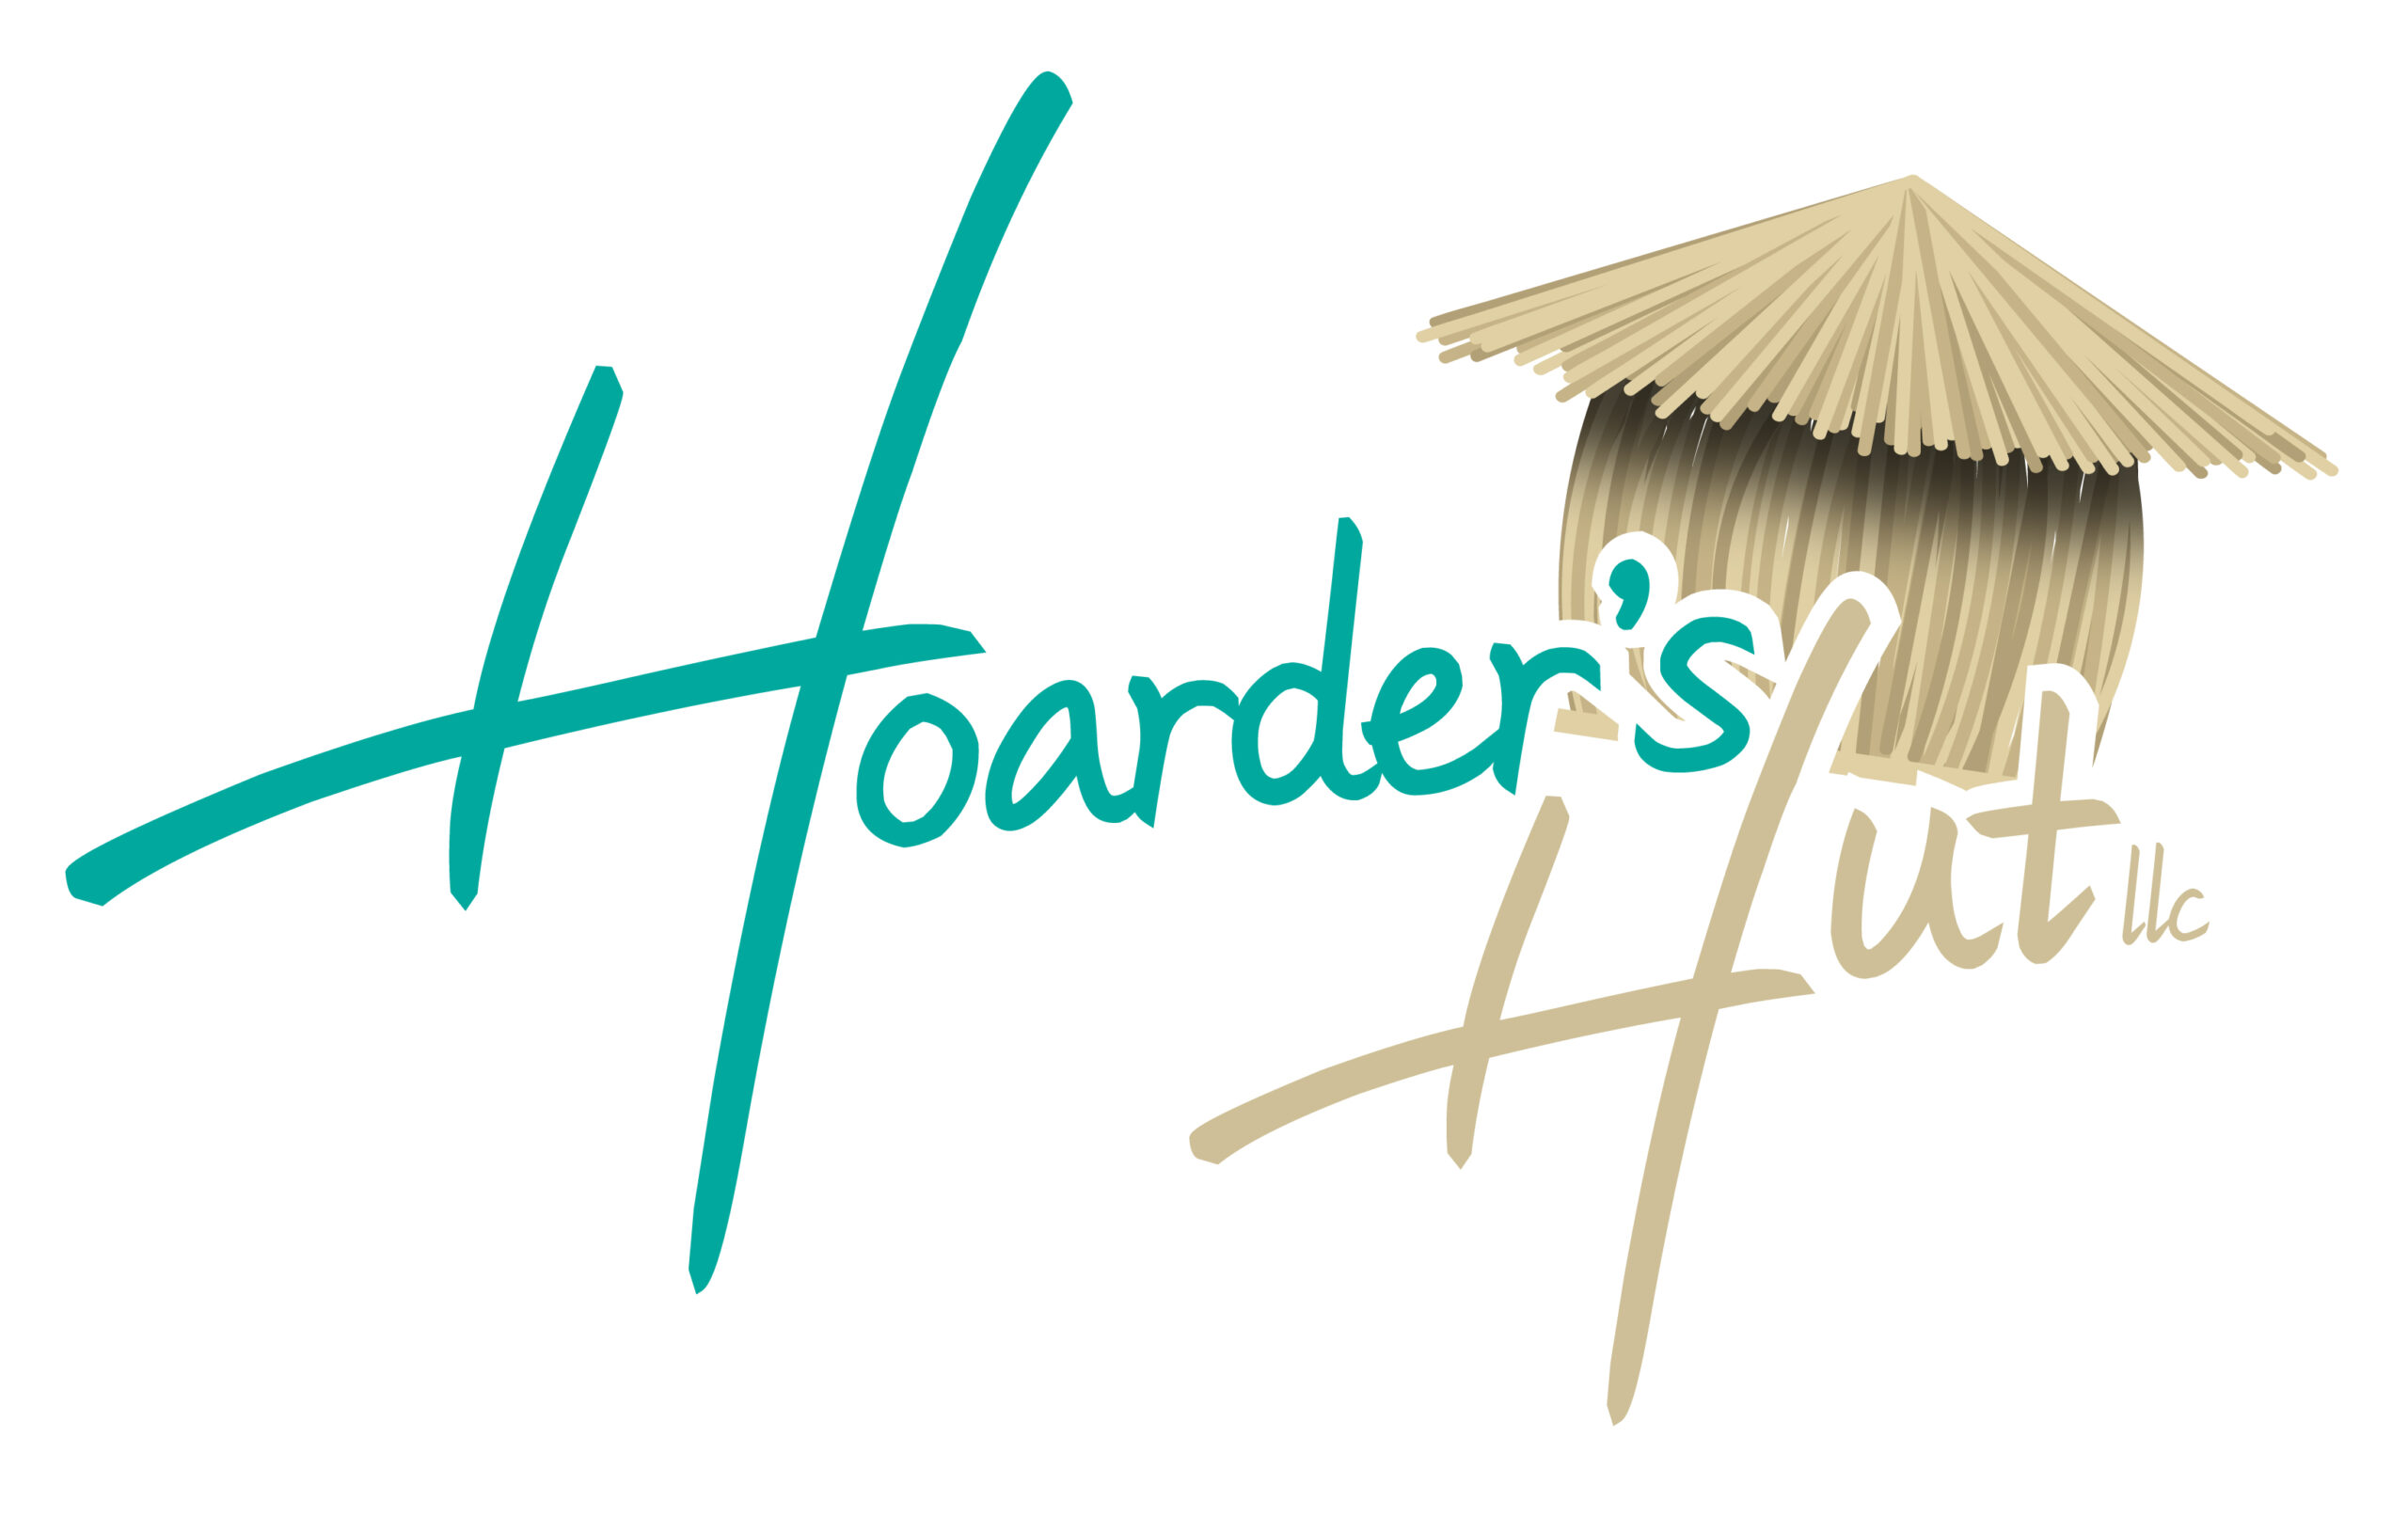 Hoarders Hut